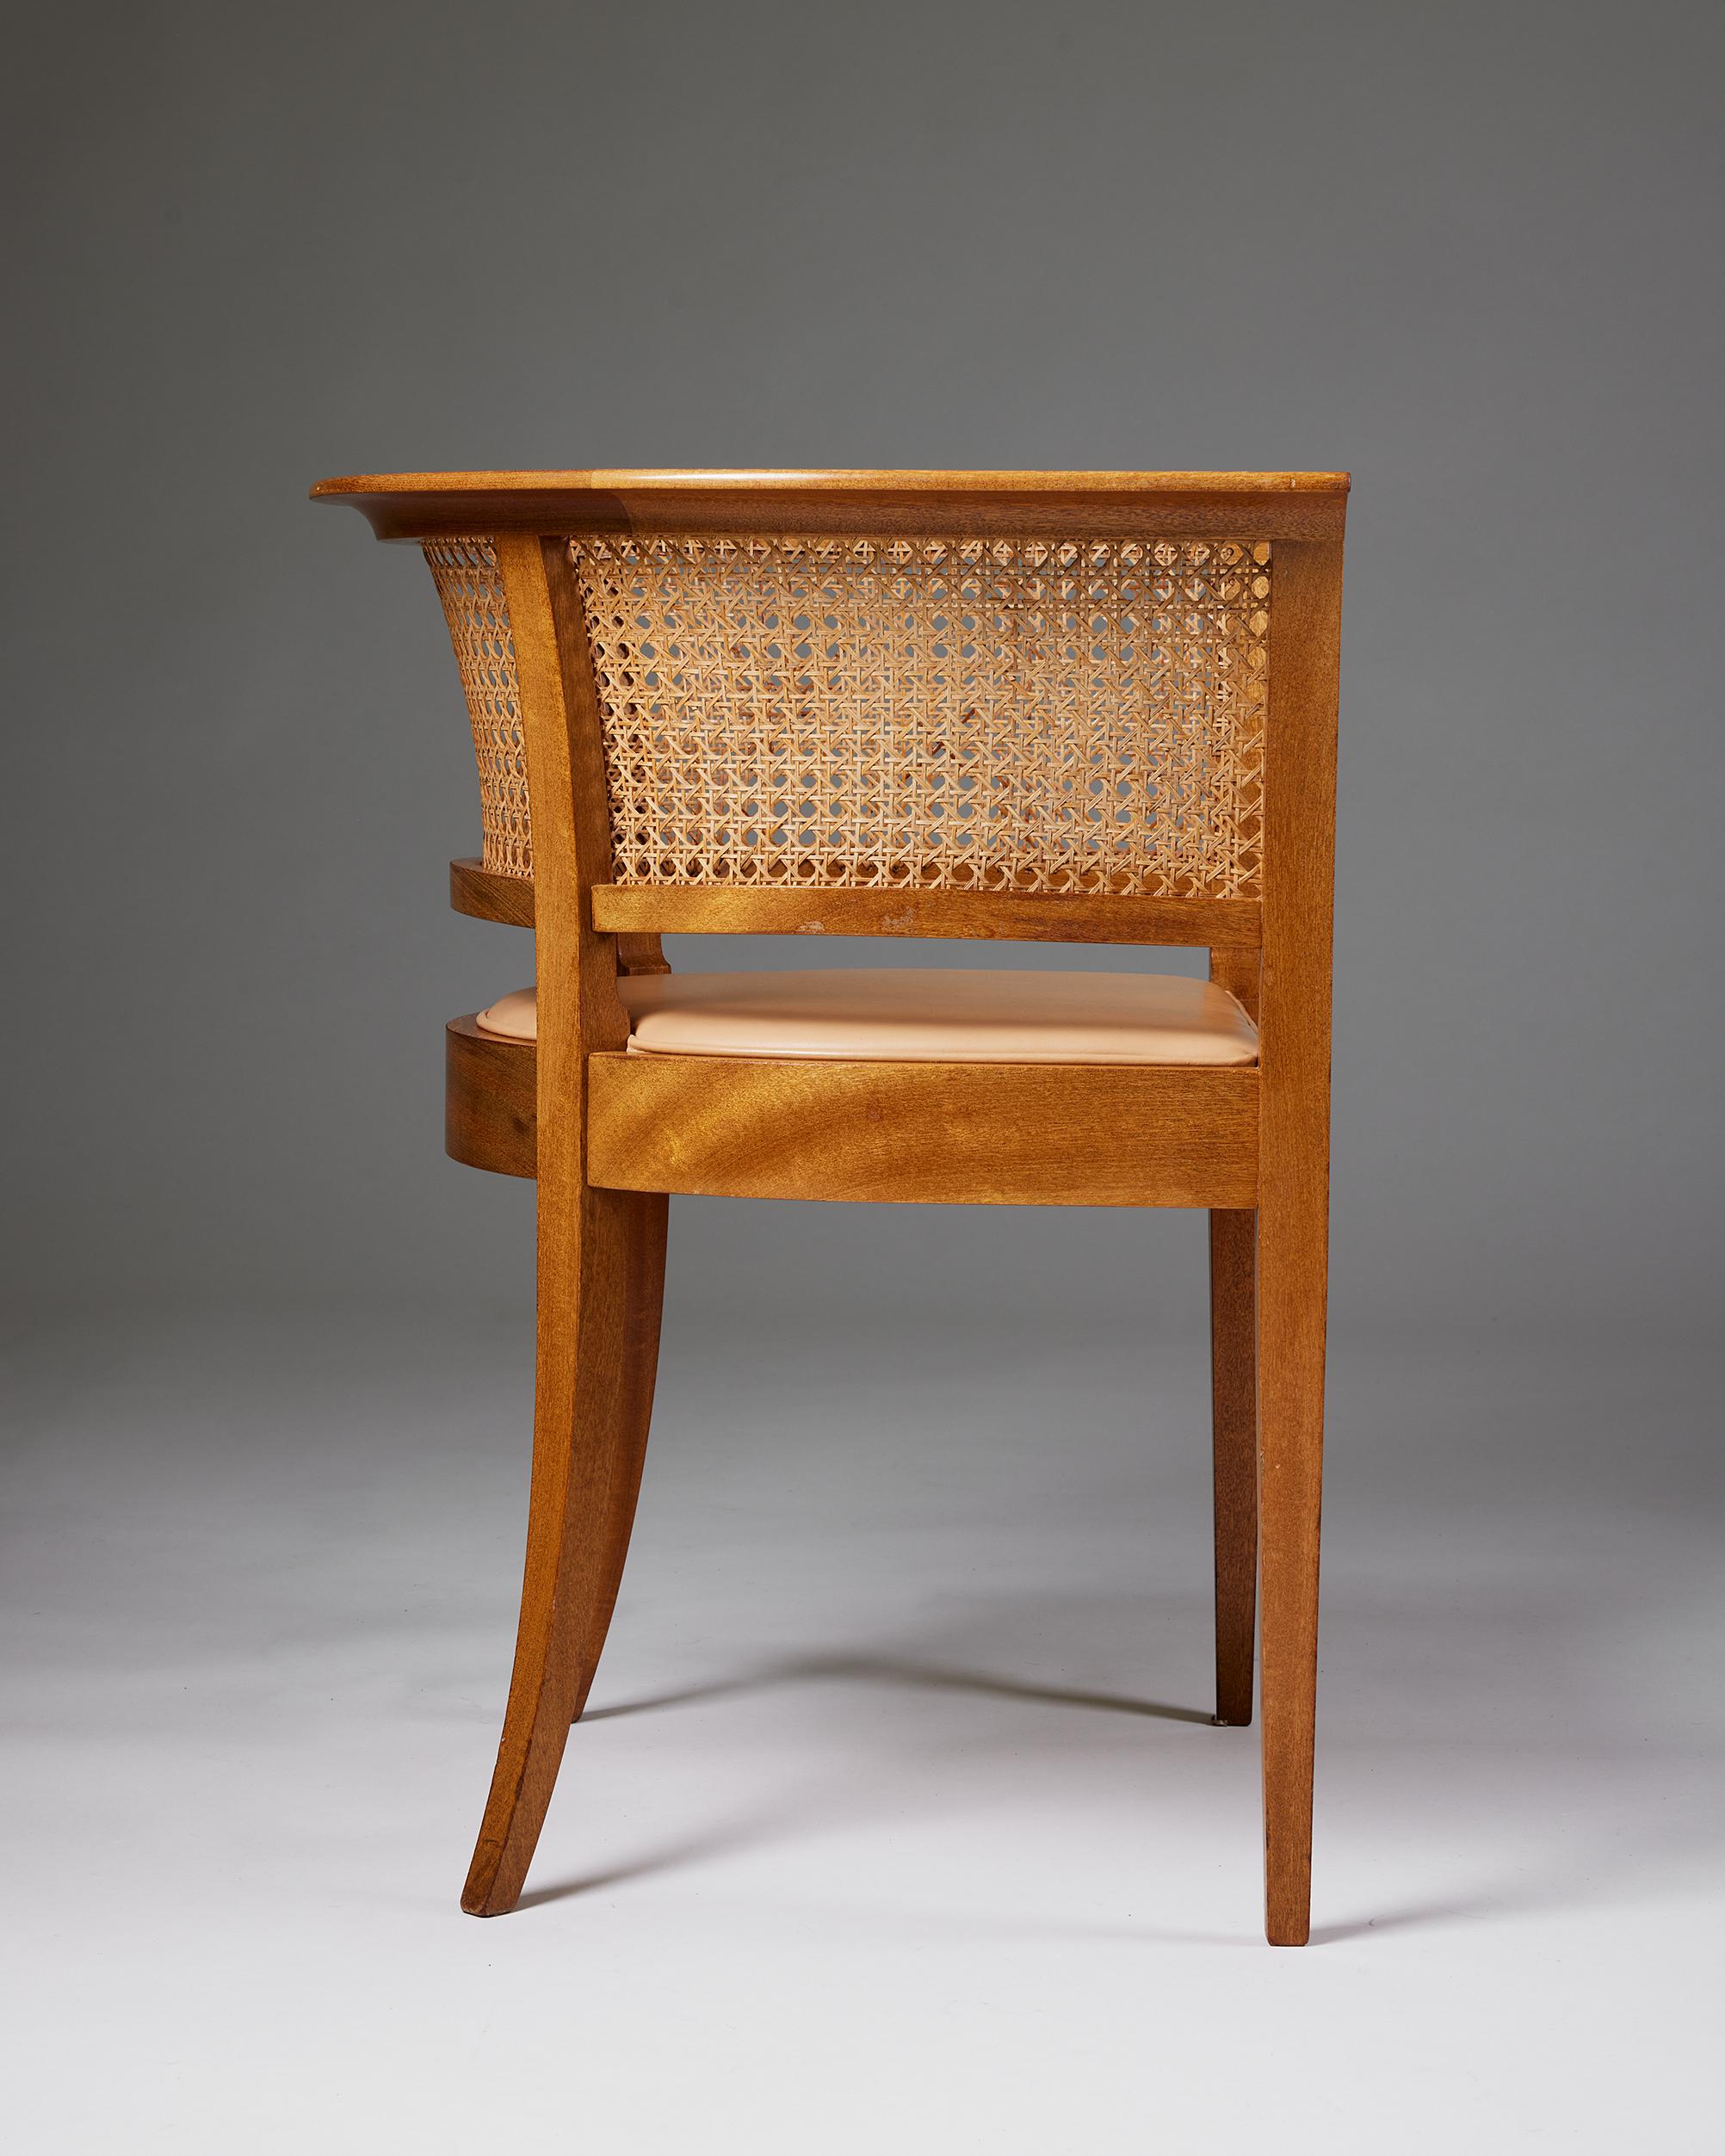 Scandinavian Modern ‘The Faaborg Chair’ Designed by Kaare Klint, Denmark, 1914